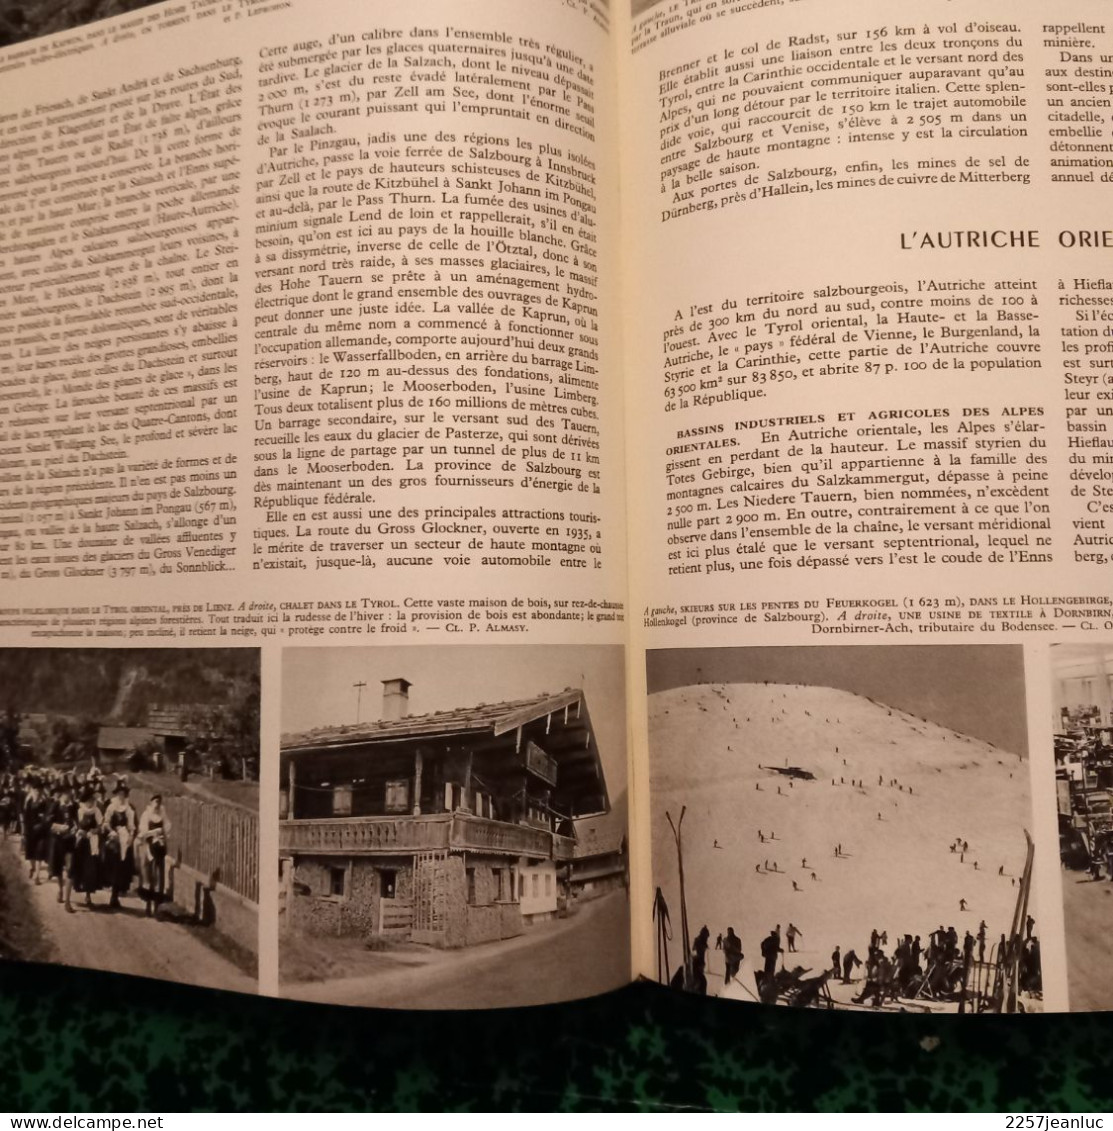 Géographie Universelle Larousse tome 1 de 1958